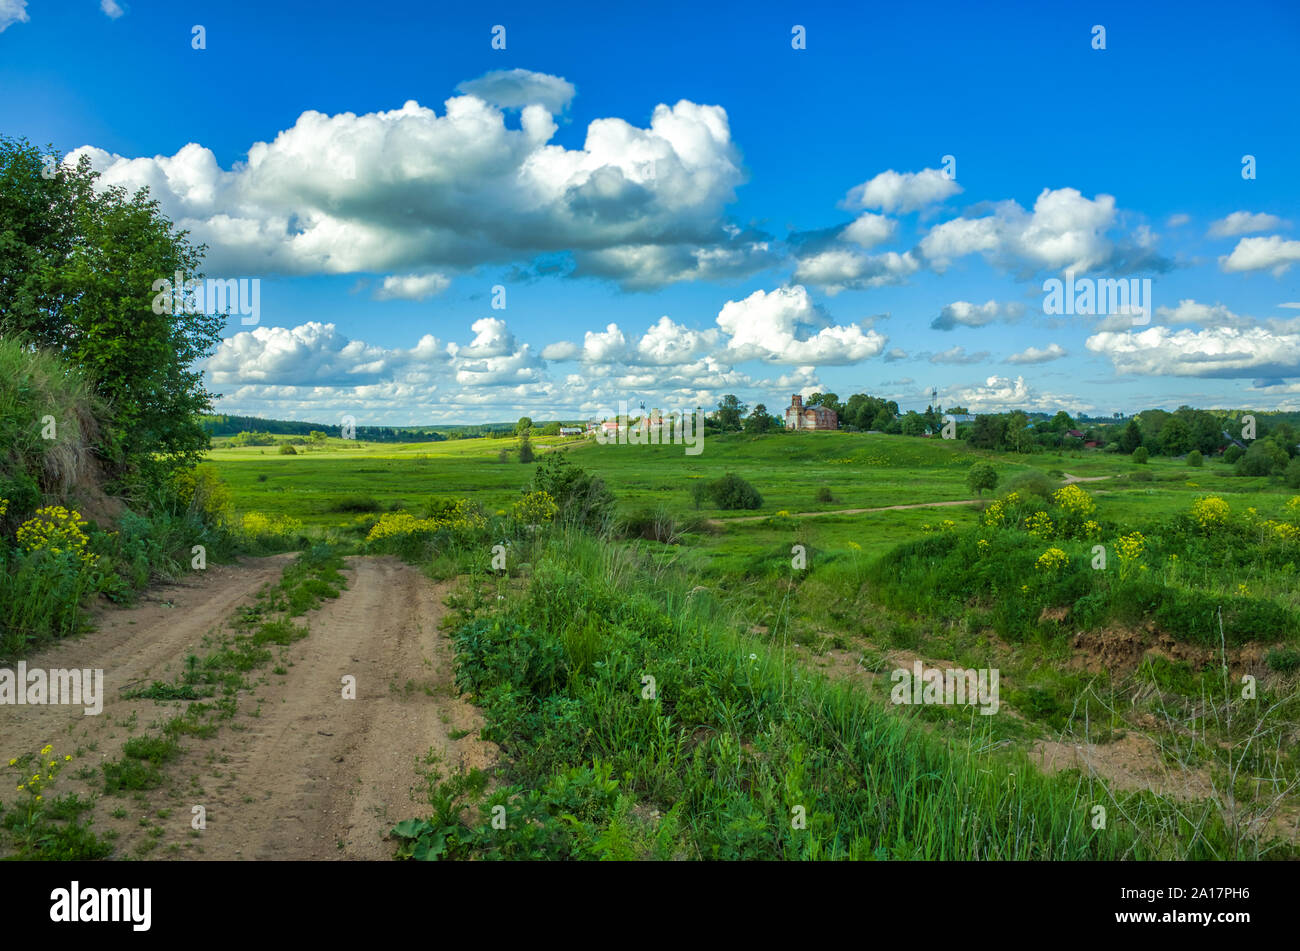 Giornata di sole, cielo sereno, prati e vegetazione. La natura in estate. Aleksino villaggio nella regione di Vladimir, Russia Foto Stock